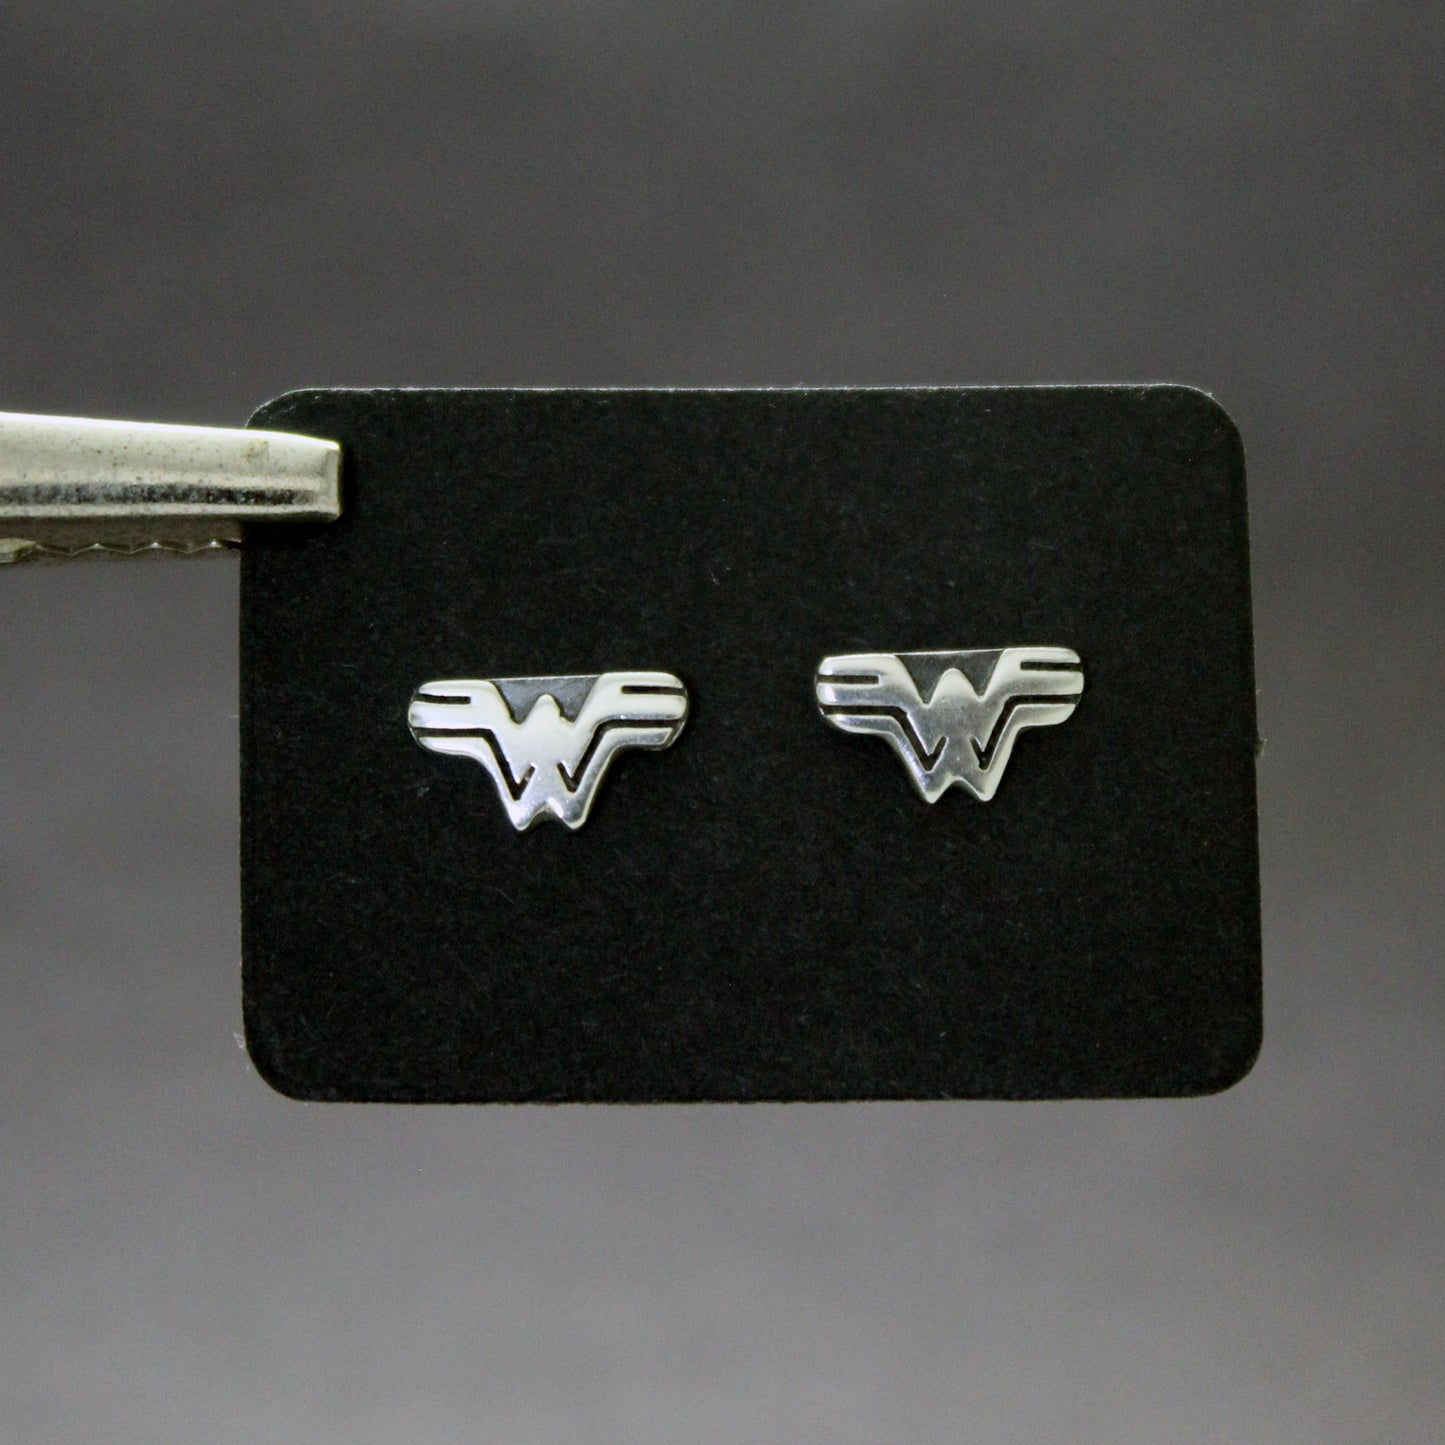 Wonder Woman mini earrings in 925 silver